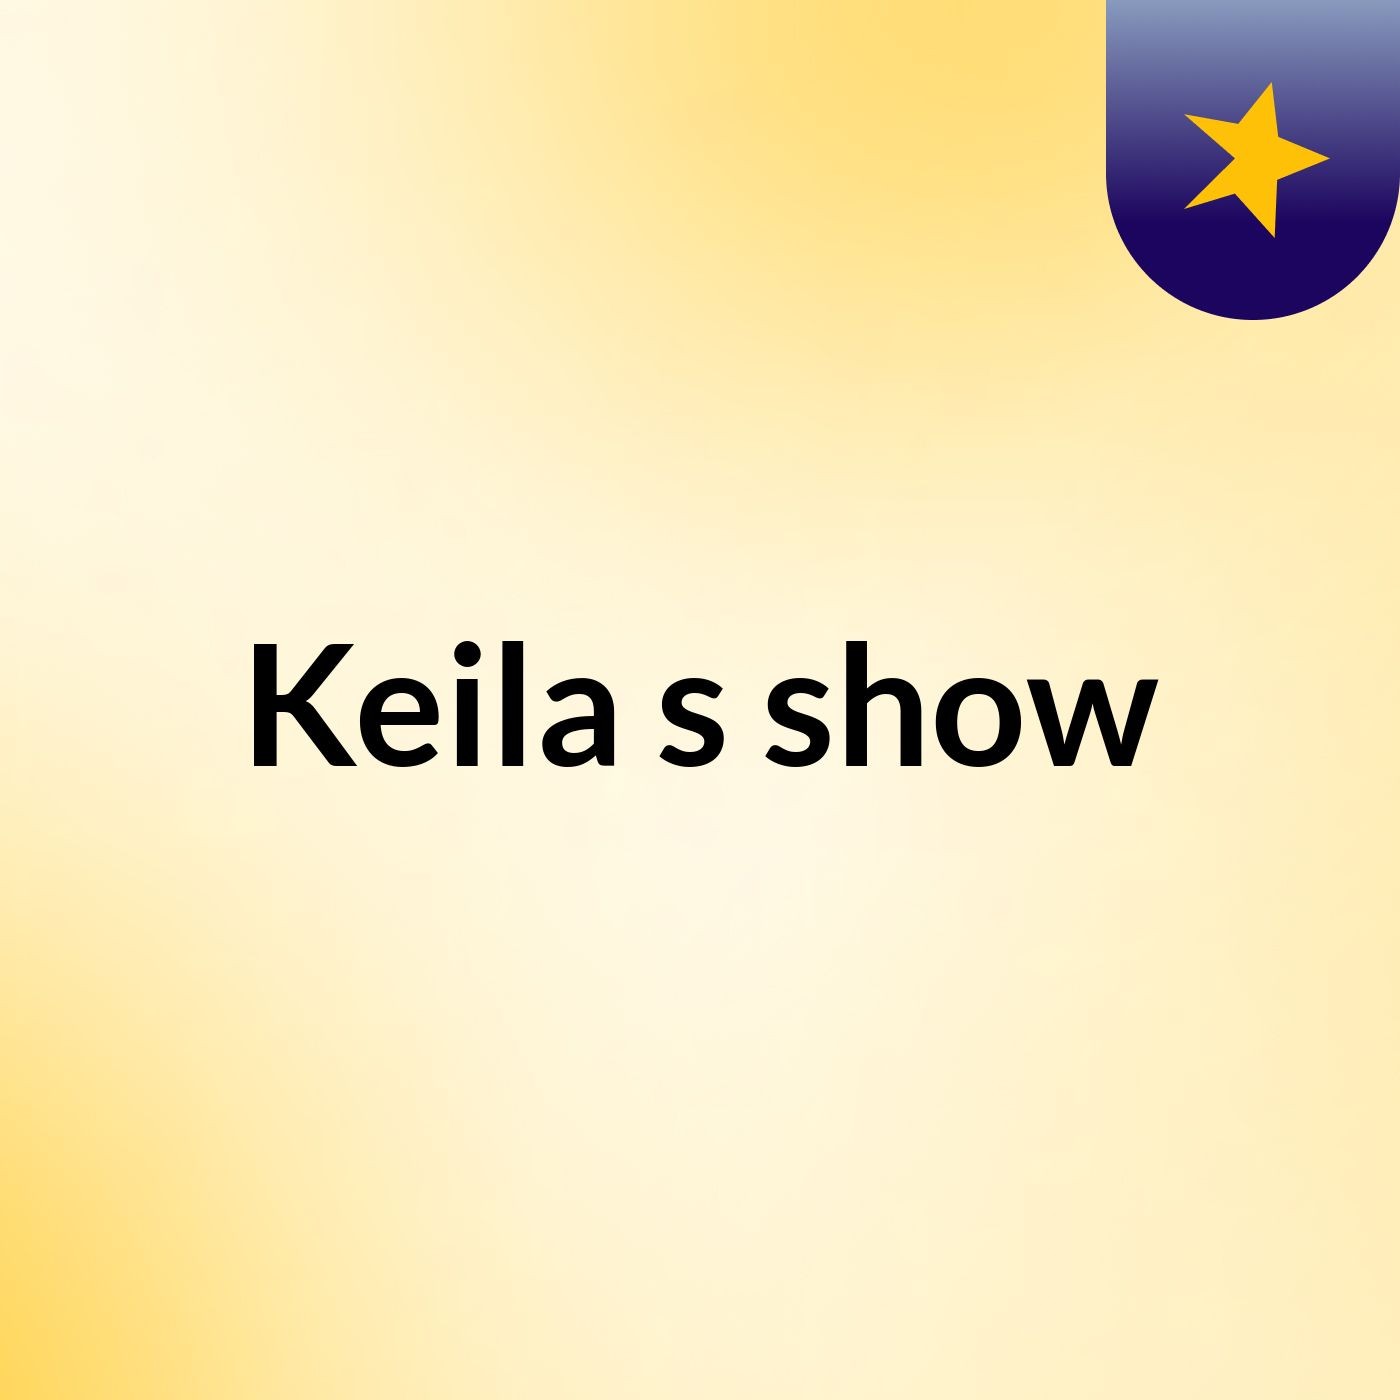 Keila's show